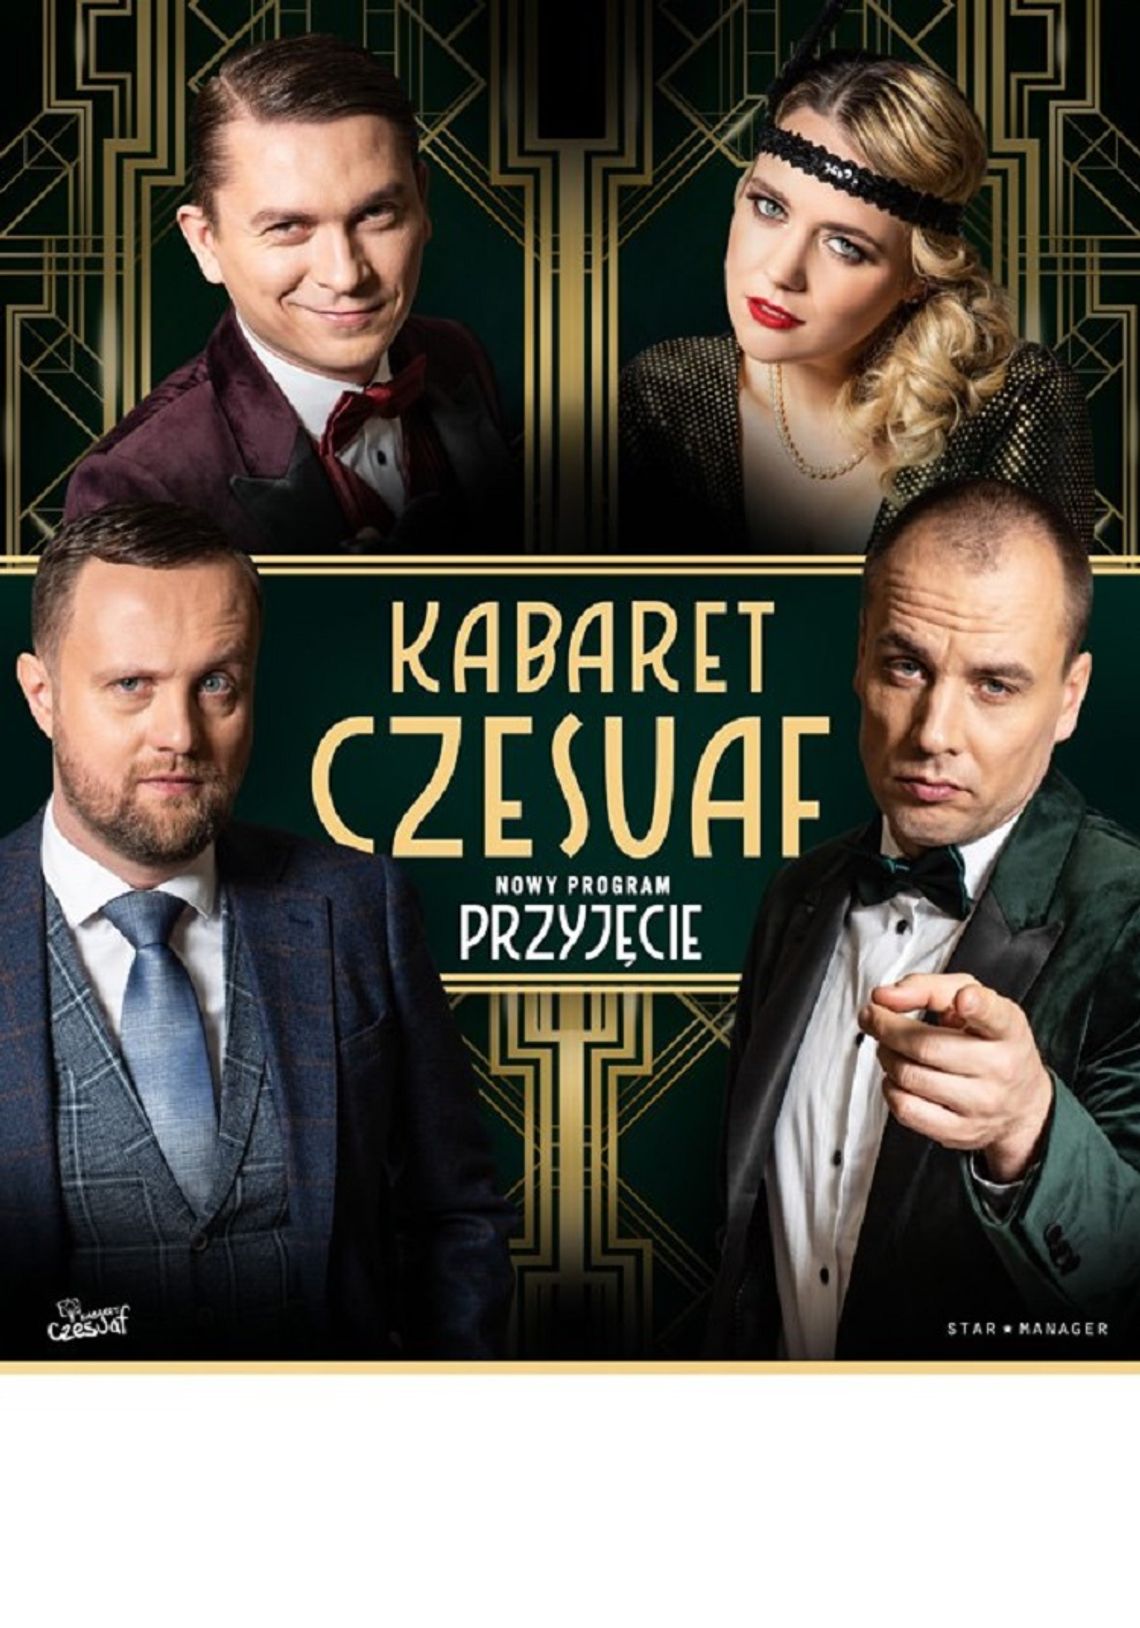 Występ Kabaretu Czesuaf - Przyjęcie w Sztumie